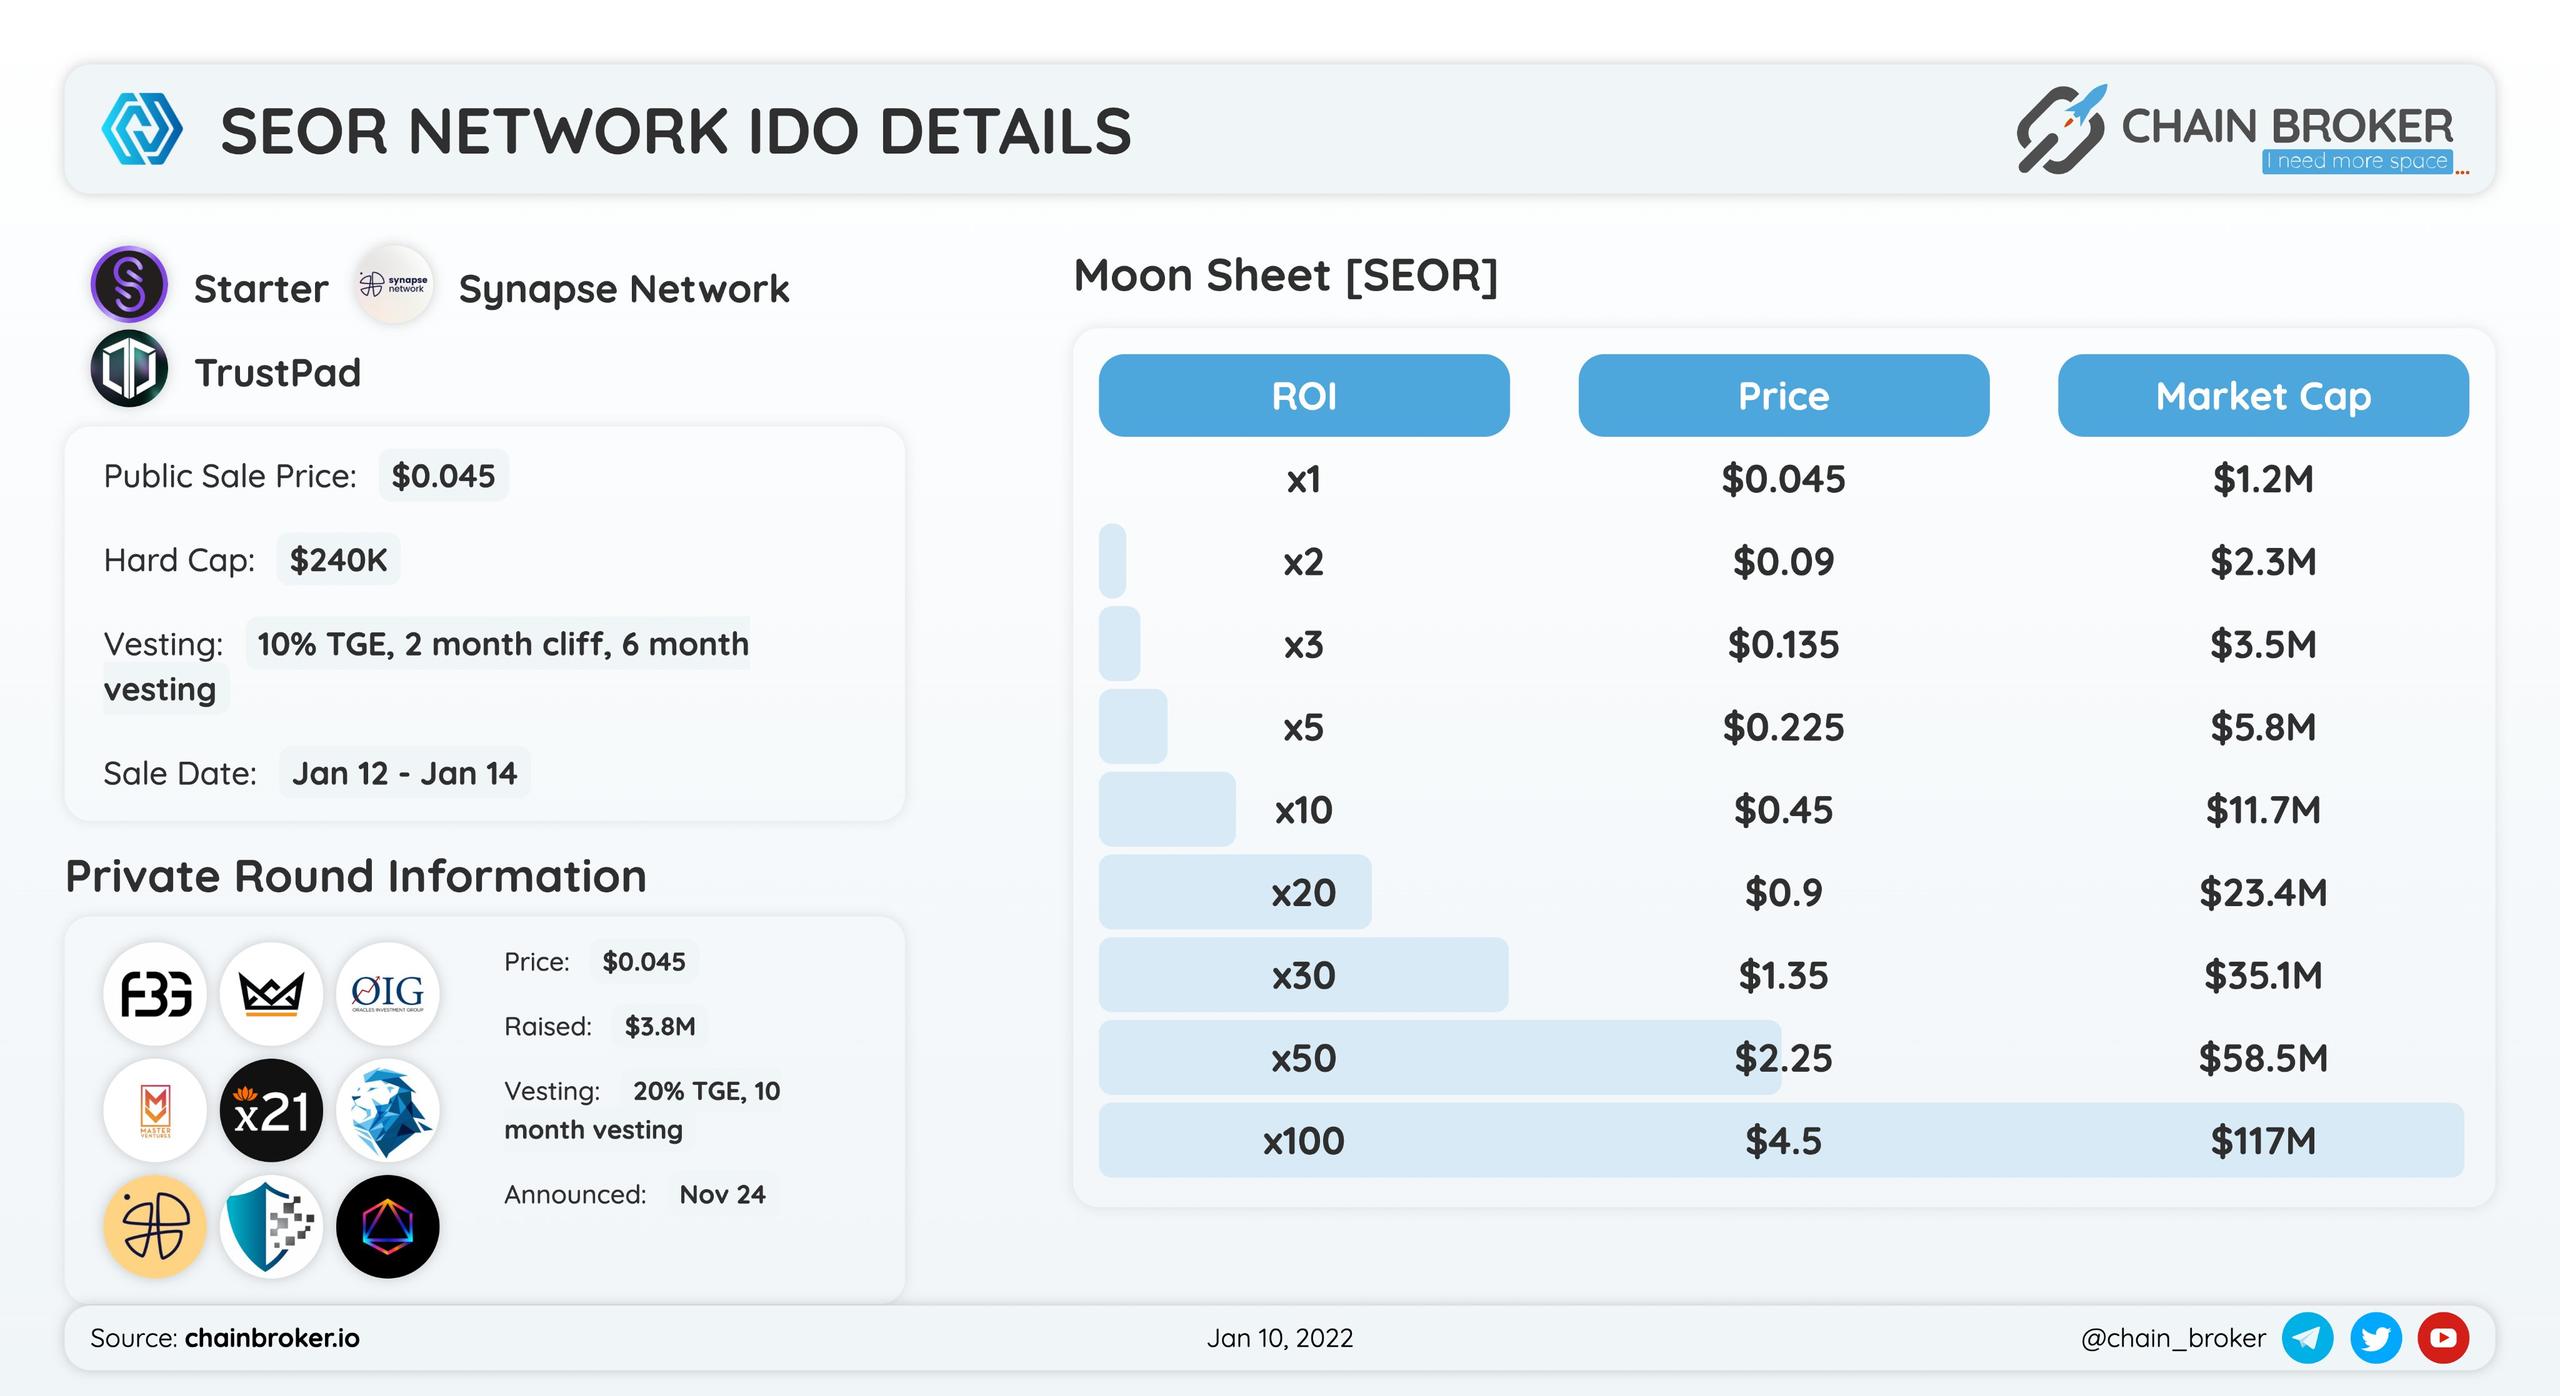 Seor Network IDO Details